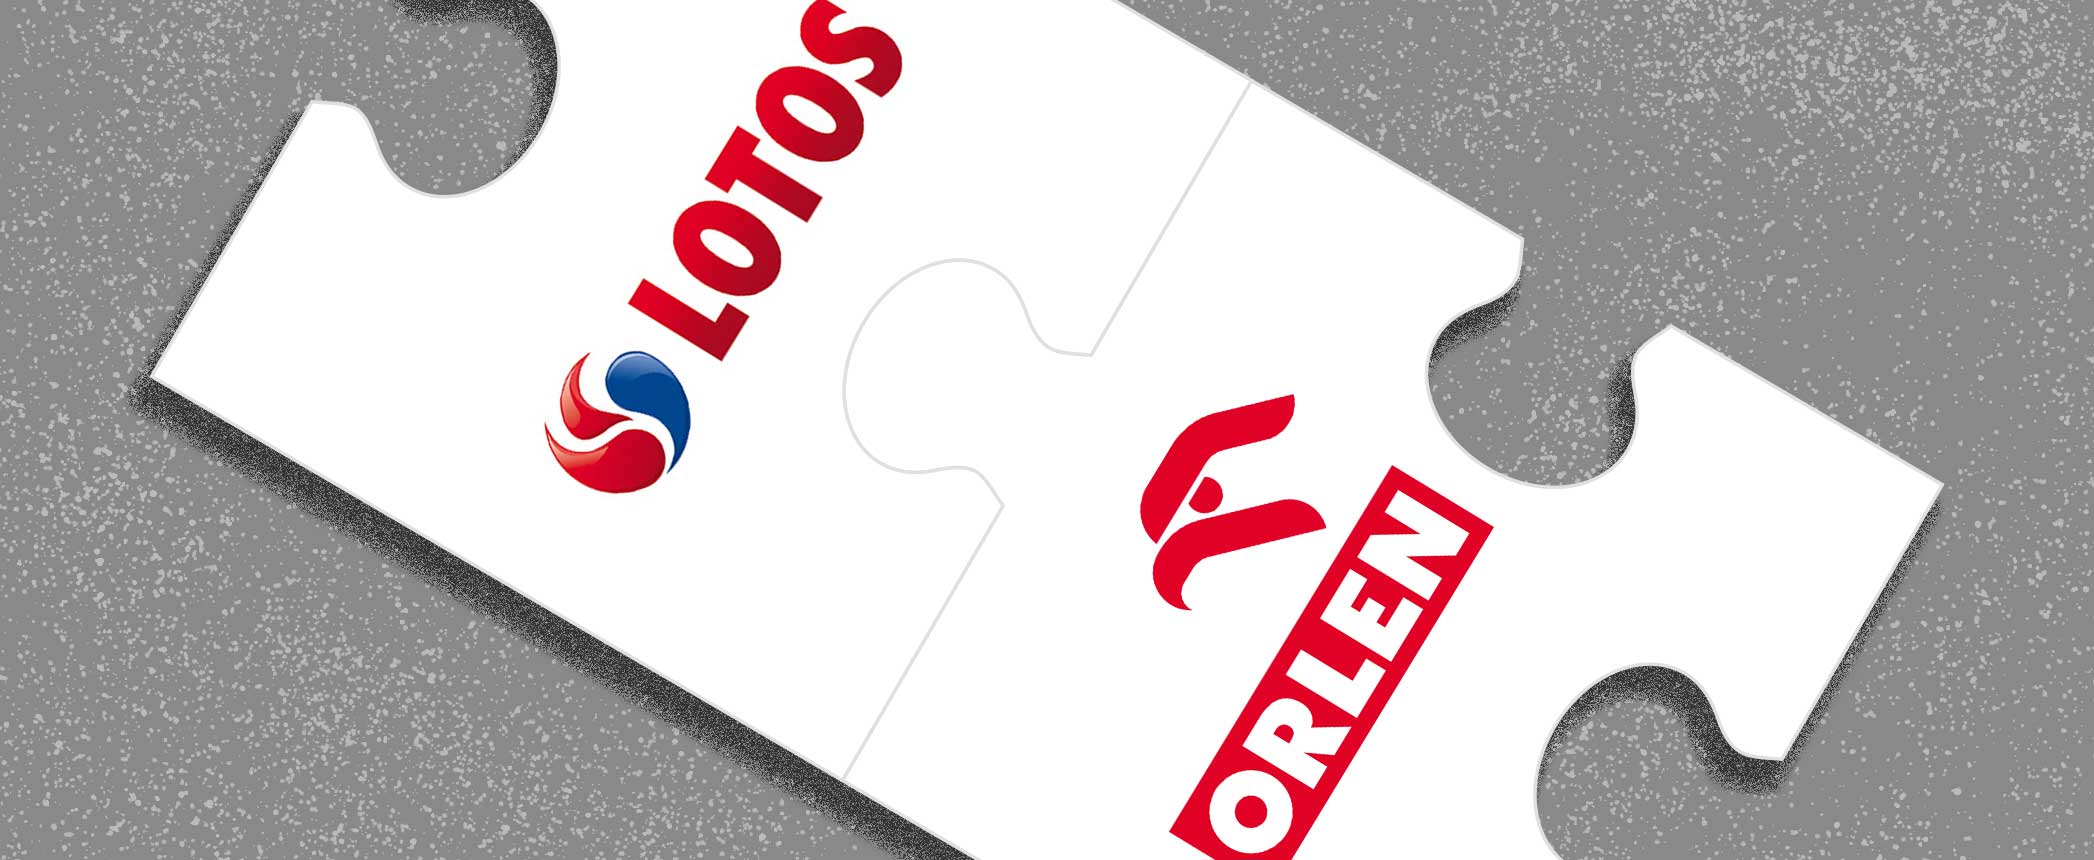 Orlen-Lotos Merger Gets EU Sign-off